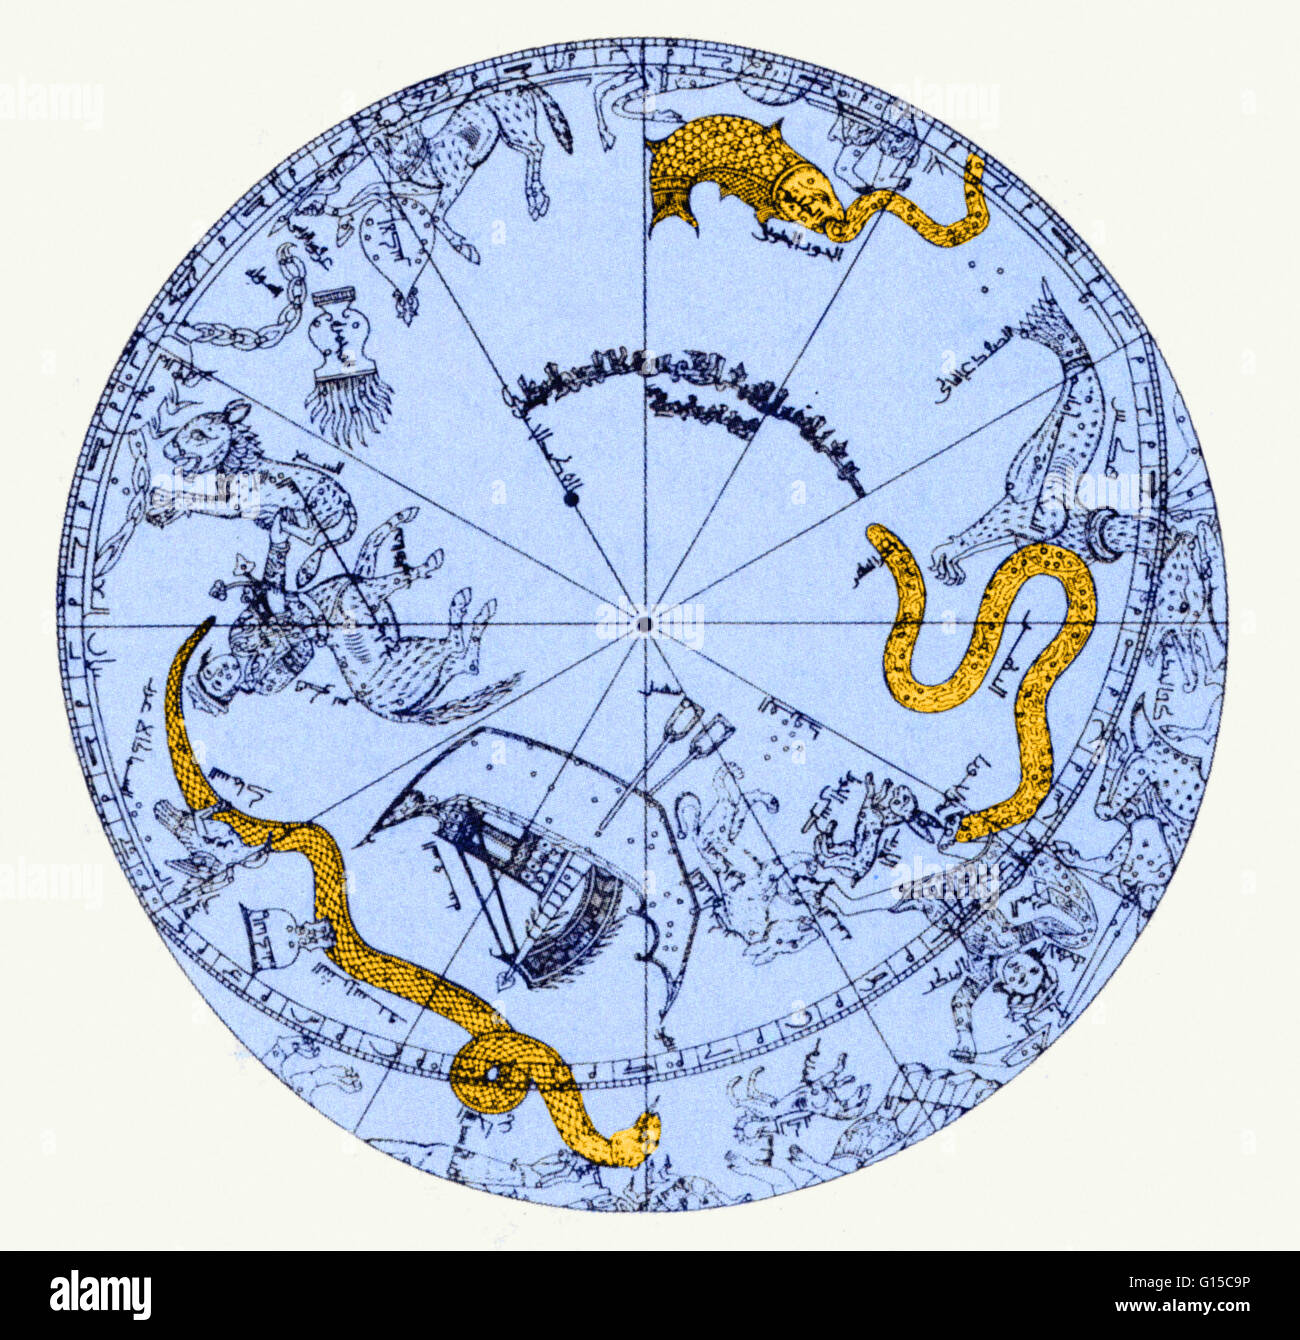 Eine Abbildung der Südhalbkugel ein Messing Himmelsglobus, Major-General Sir John Malcolm angehören. Die Messing-Globus wurde von Muhammad ibn Hilal, möglicherweise von Maragha, Nord-West-Iran, AD 1275 / 76 gemacht. Stockfoto